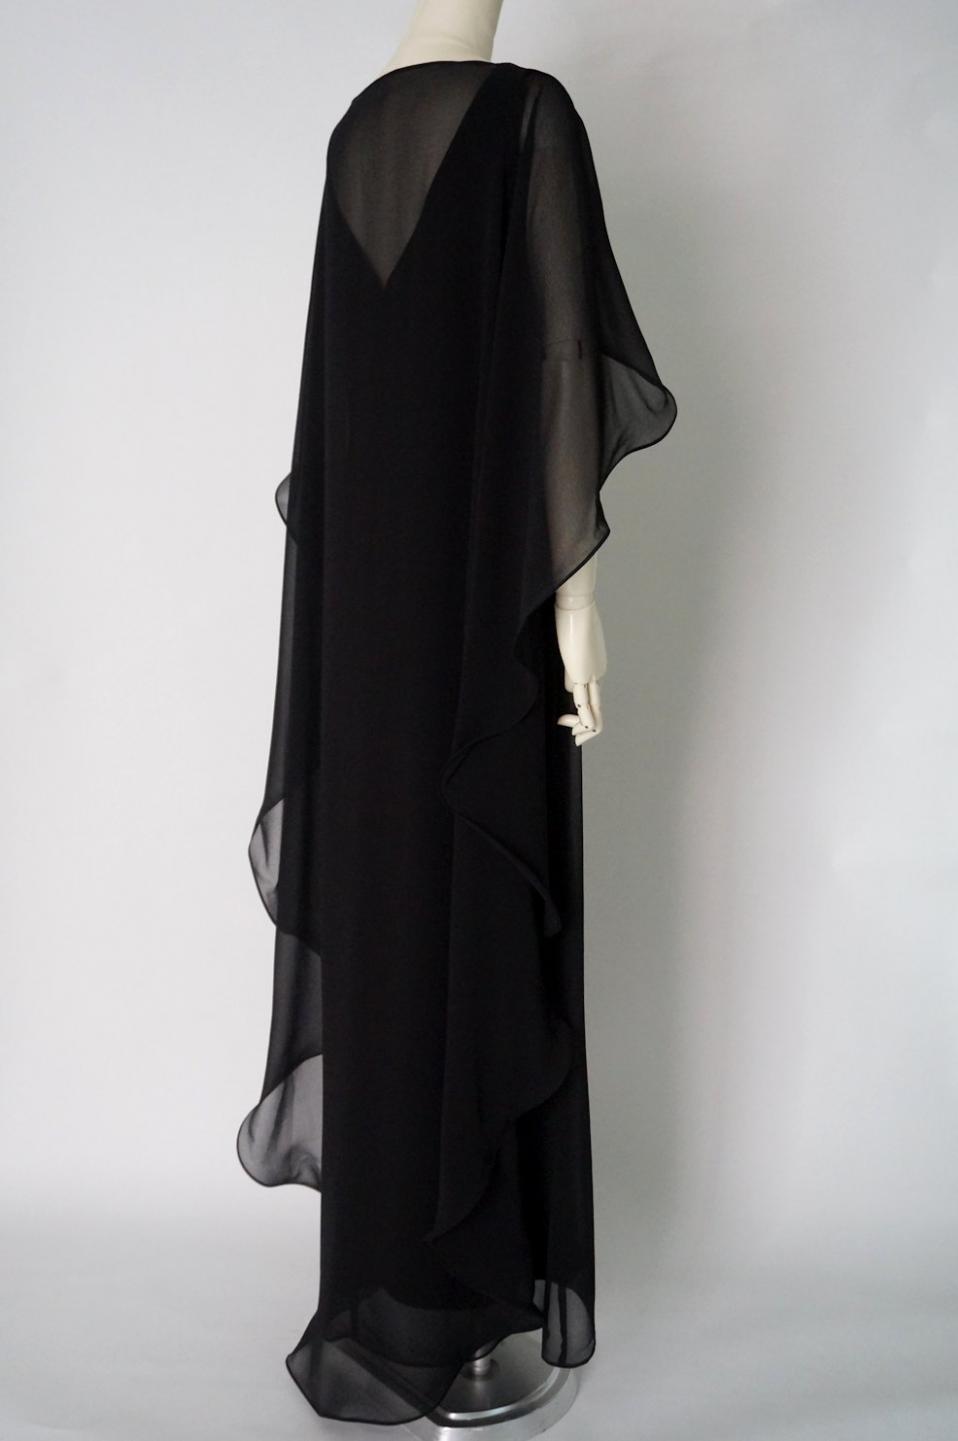 ラルフローレン フリルシフォンケープのVネックロングドレス サイズ6 / レンタルリトルブラックドレス テン Rental Little